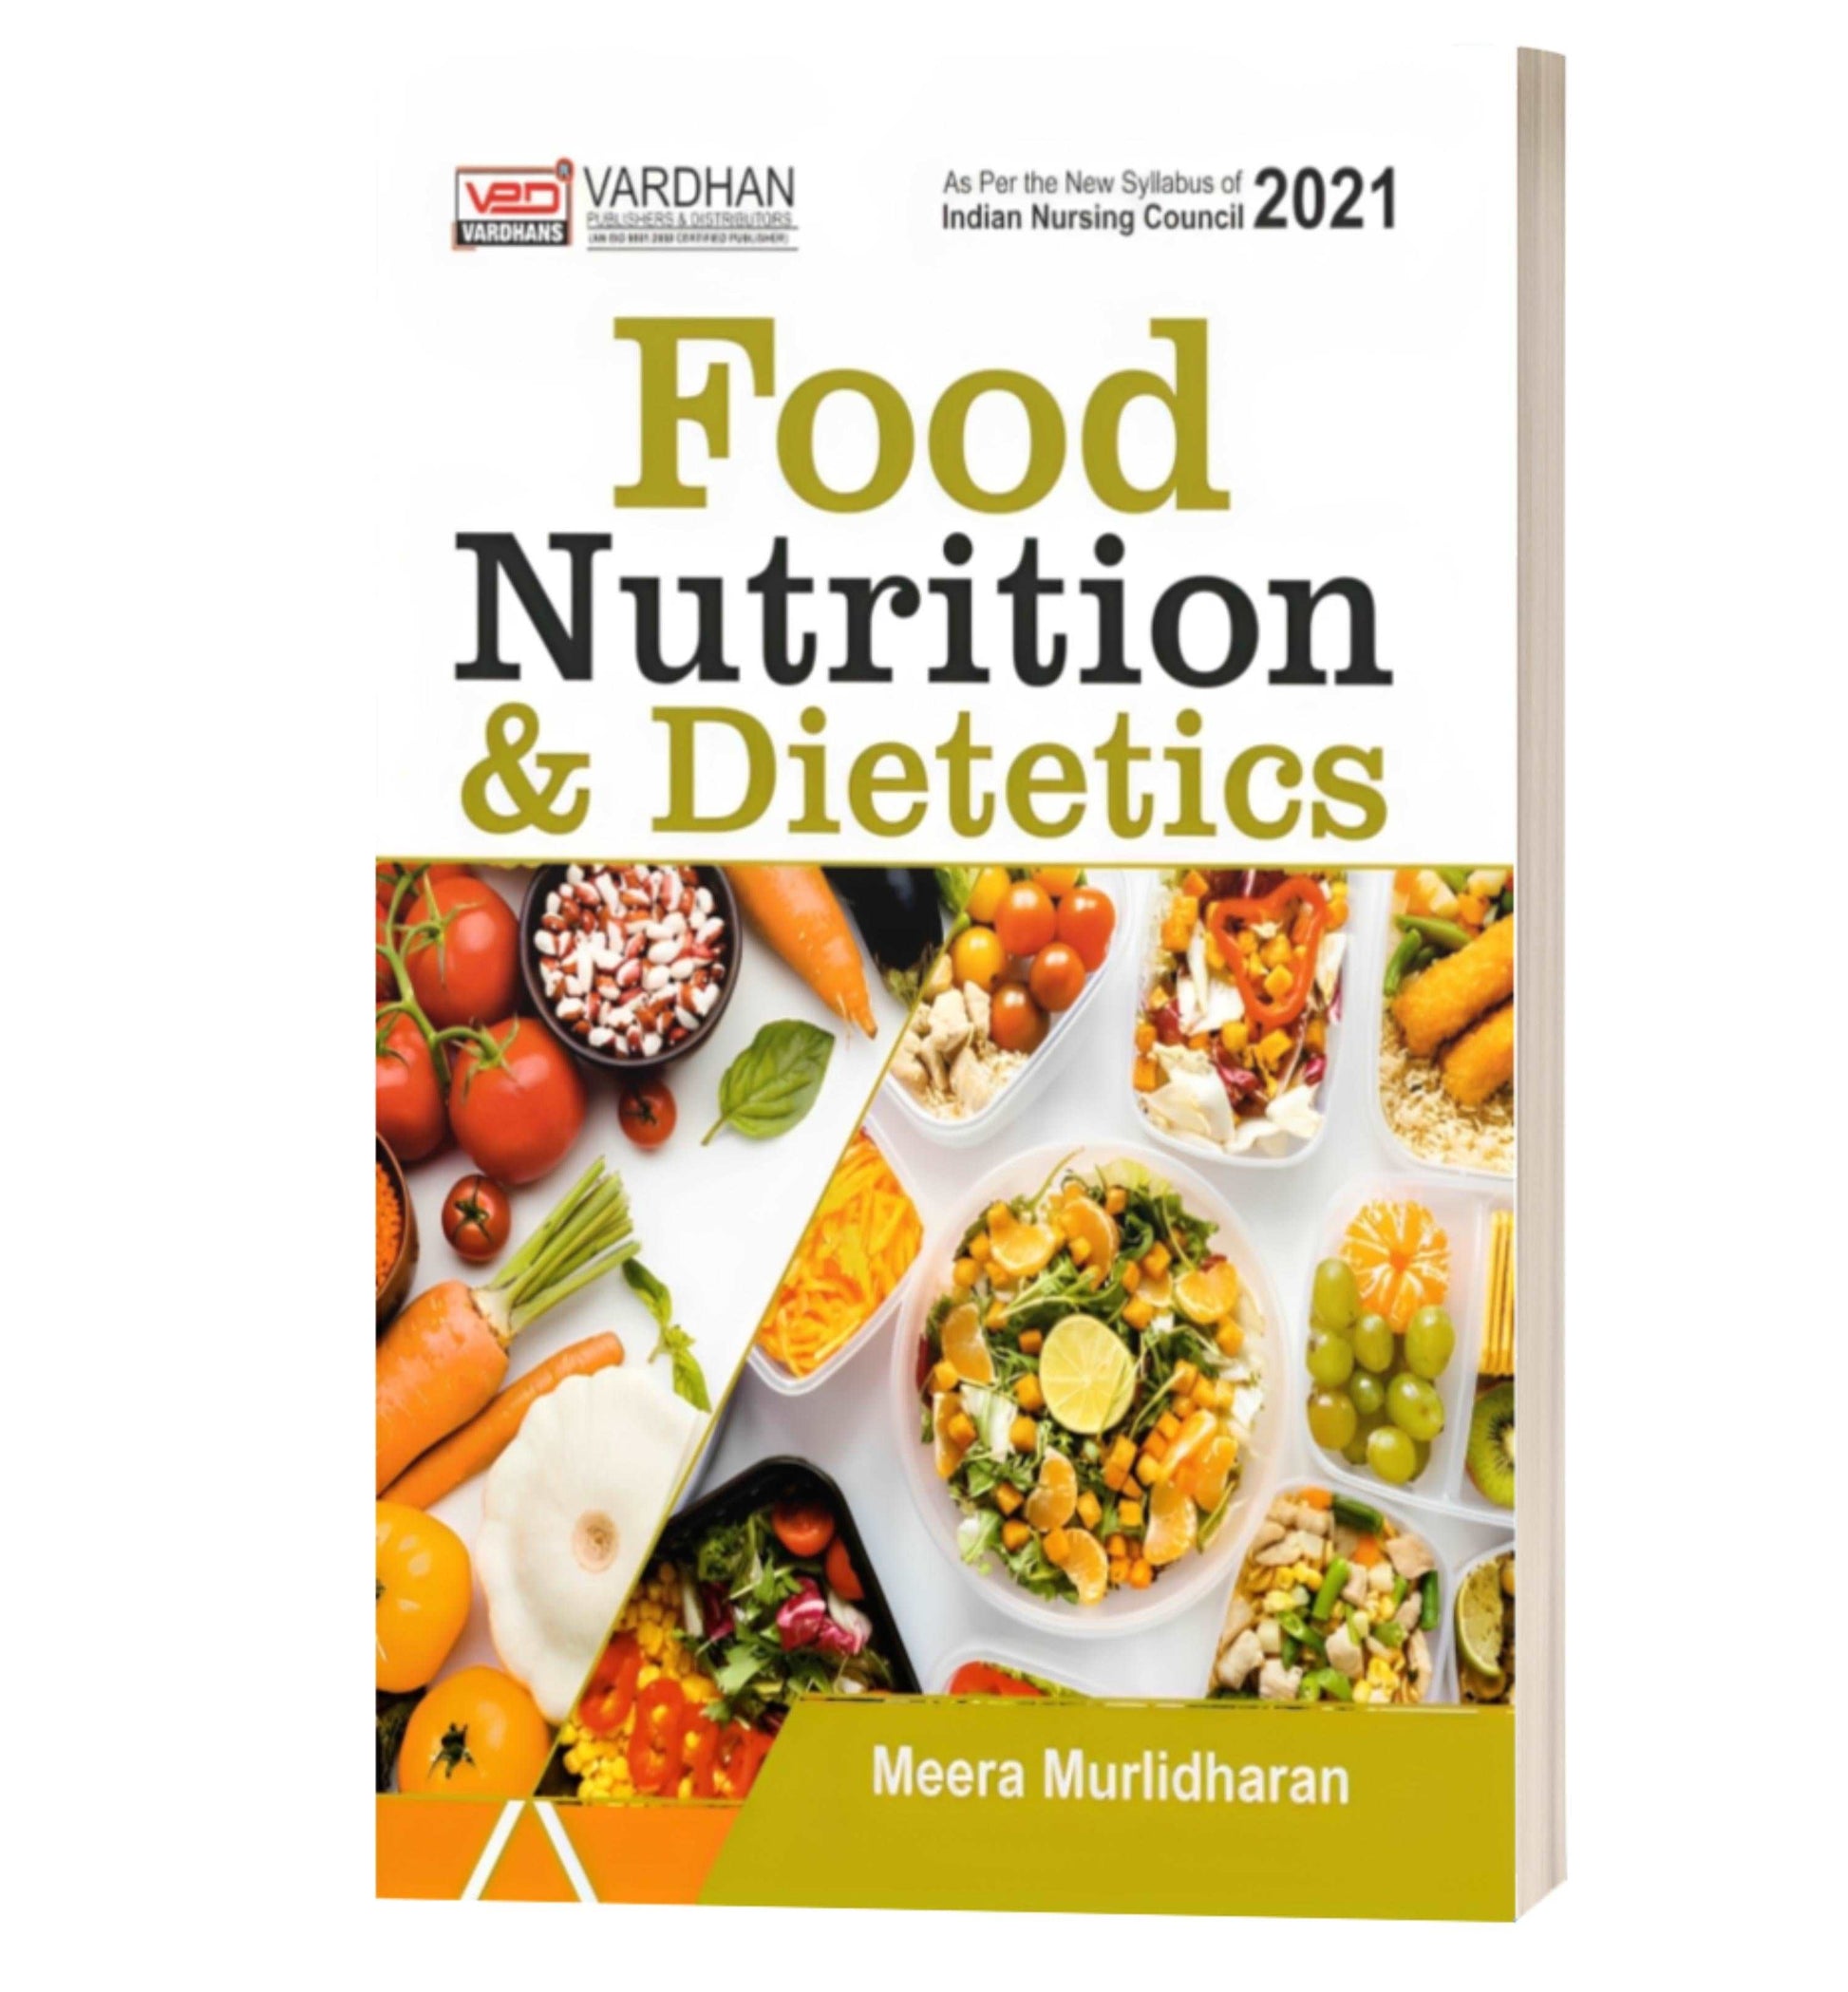 Food, Nutrition & Dietetics